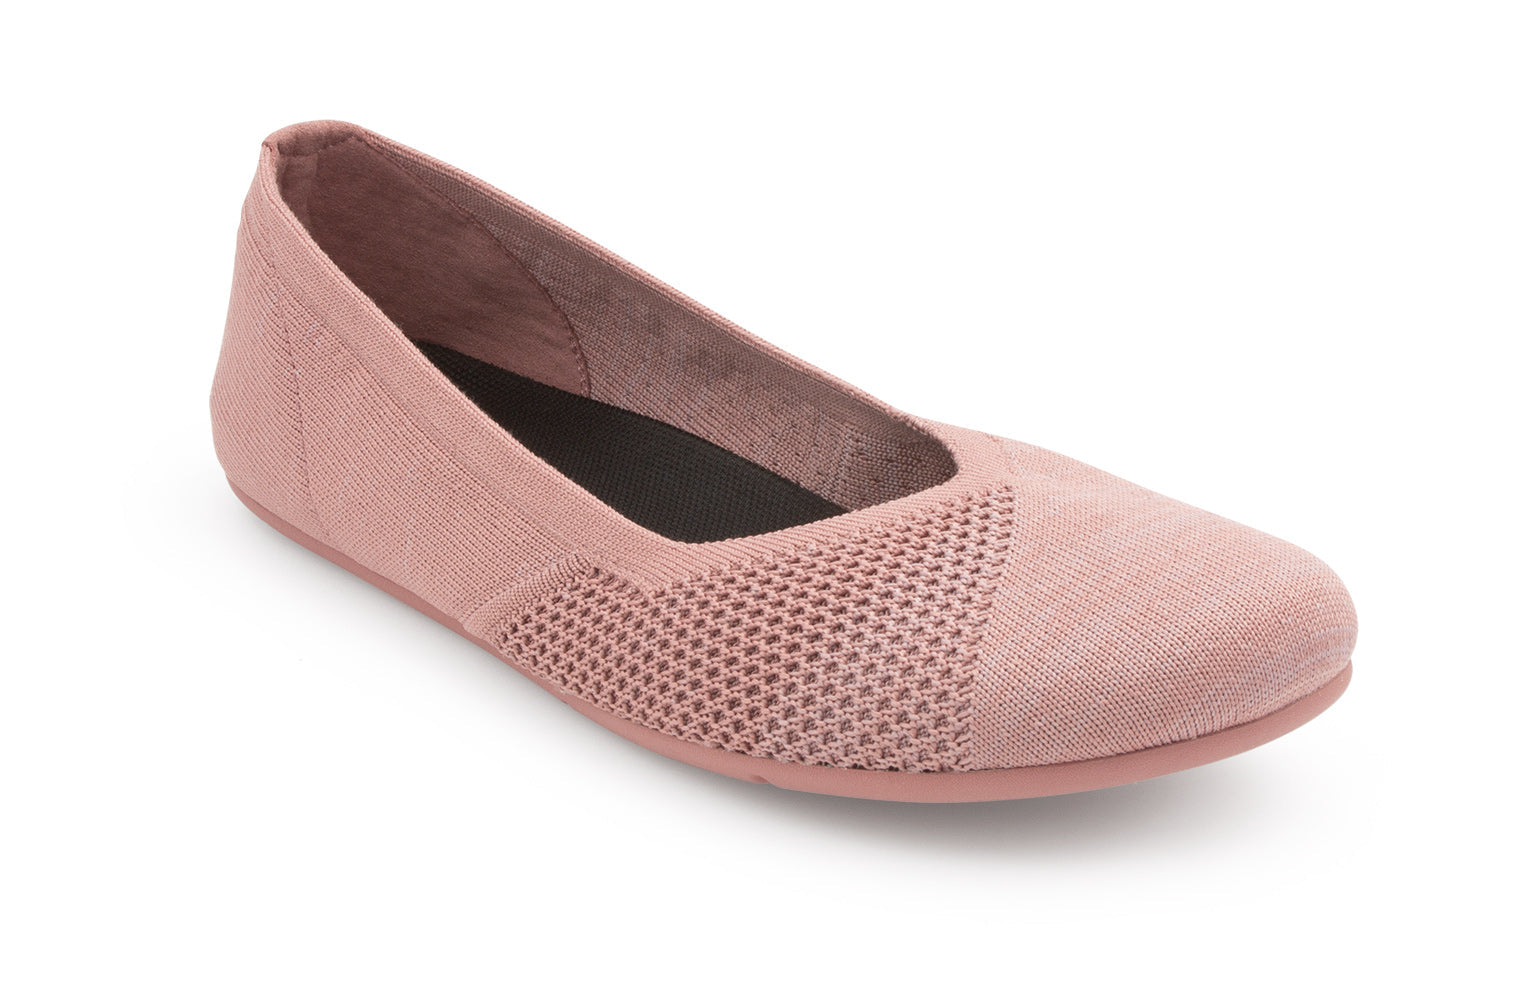 Xero Shoes Phoenix Knit Womens barfods ballerinaer til kvinder i farven rose, vinklet